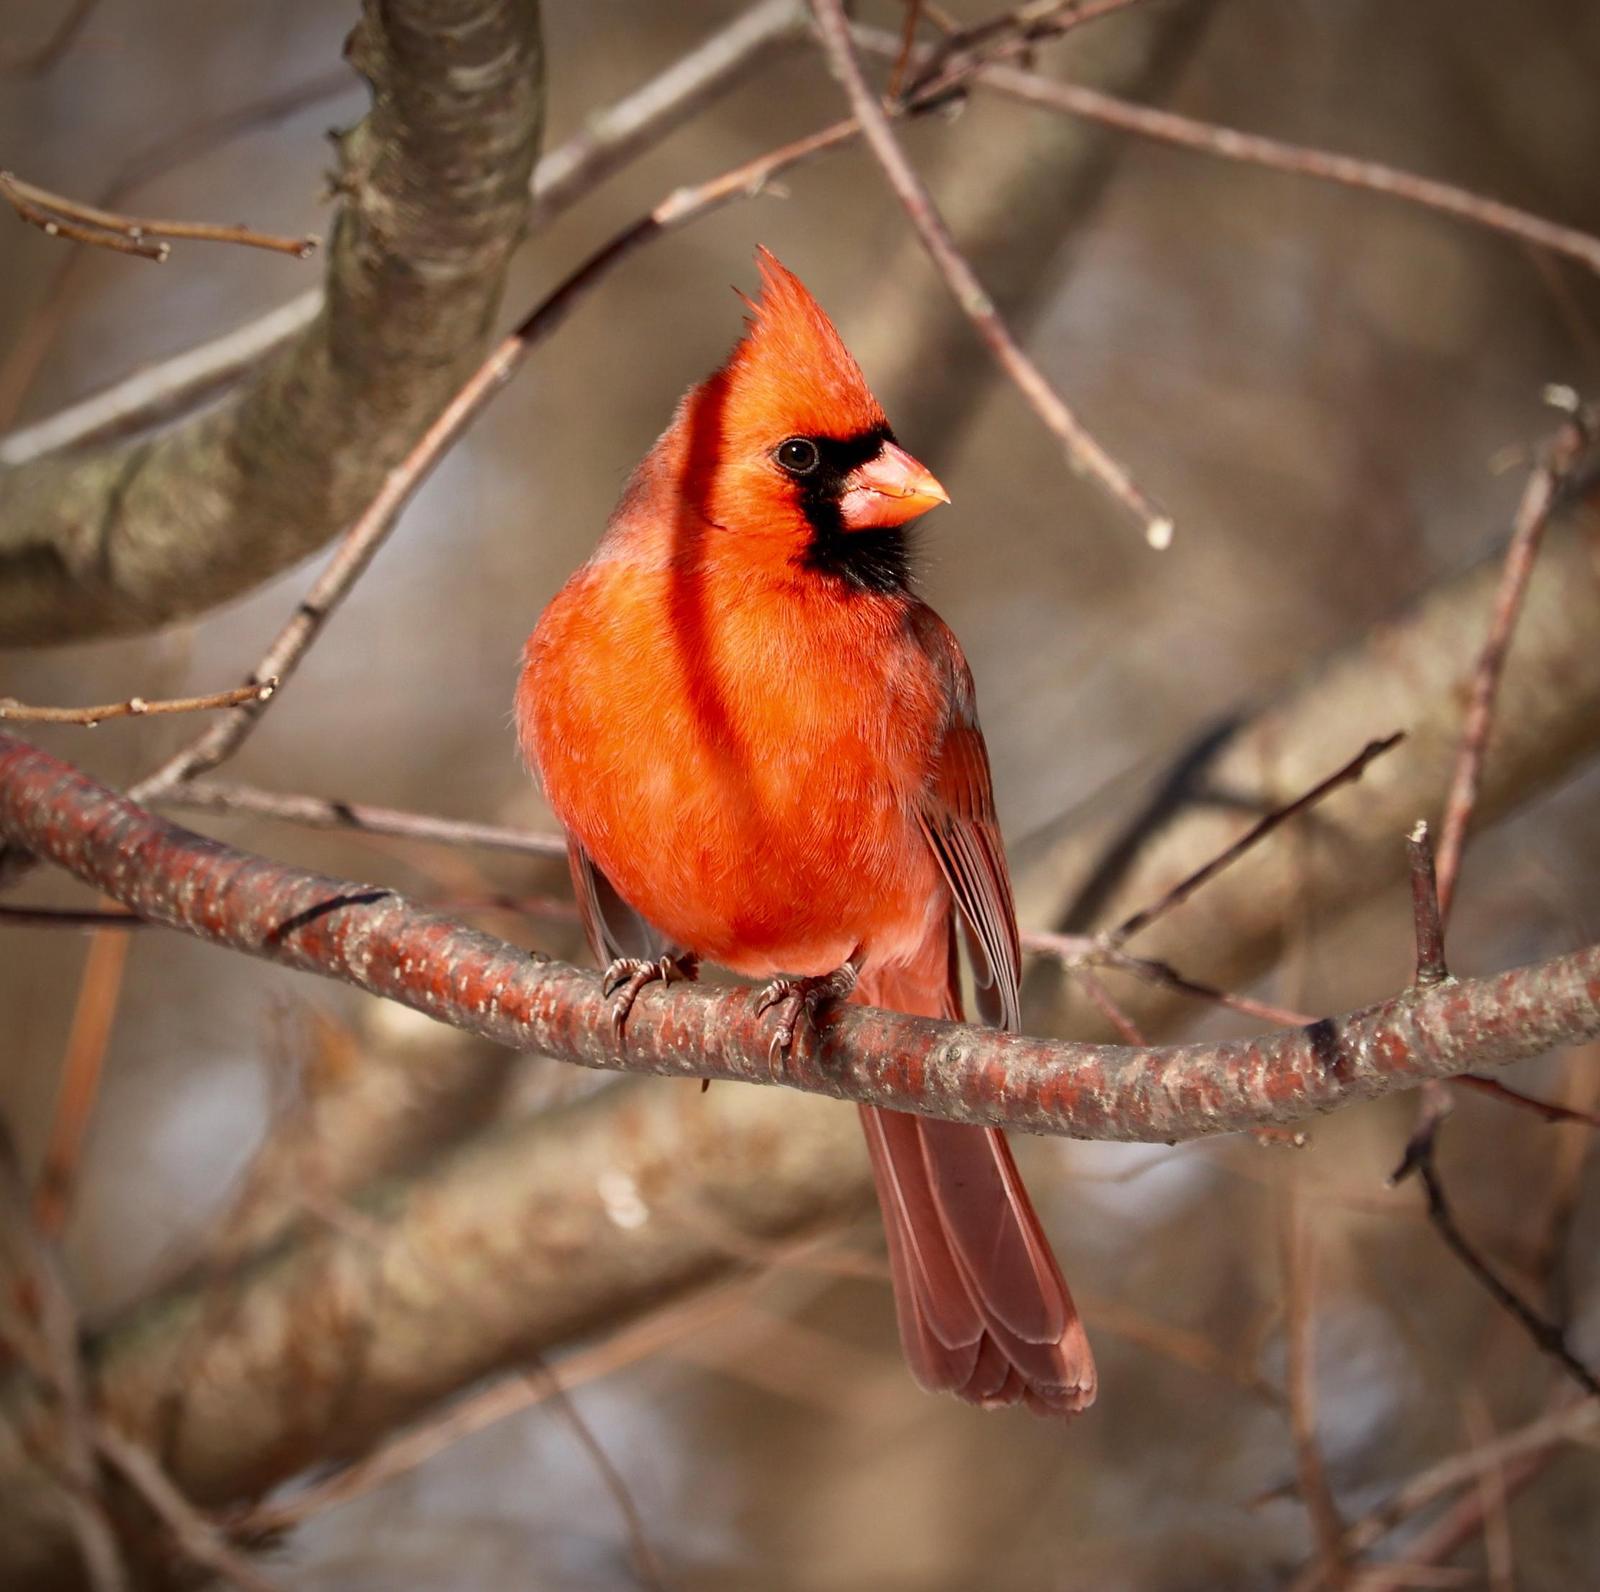 Northern Cardinal (Long-crested) Photo by Kyoji Nakano